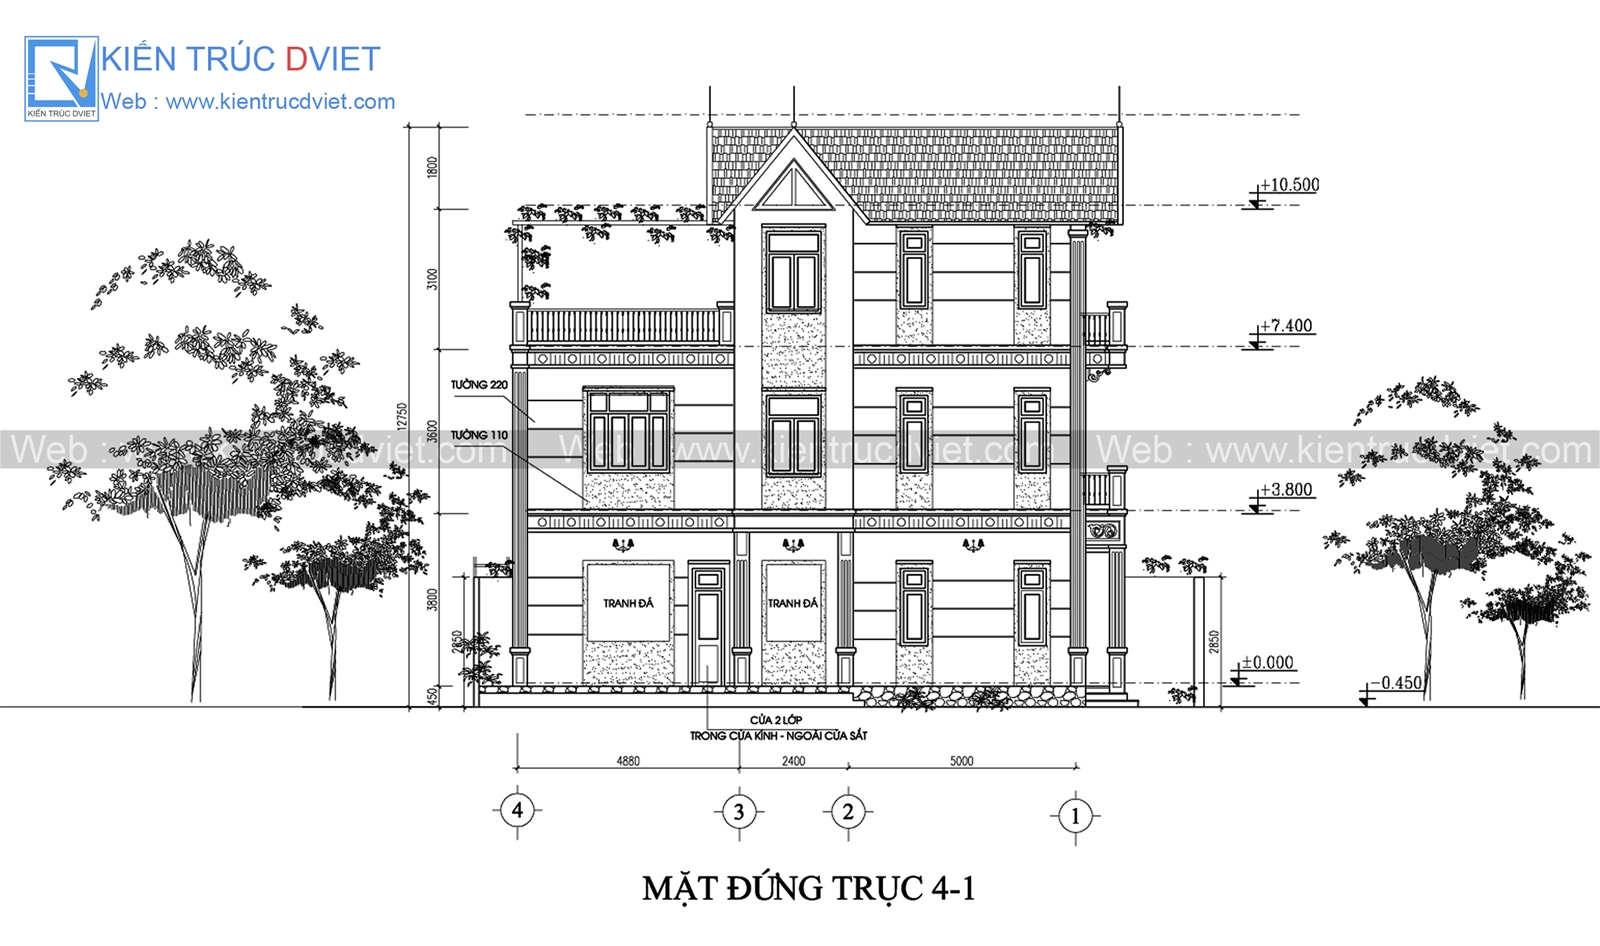 Mẫu biệt thự 3 tầng tân cổ điển phong cách Pháp 8x125m tại Hà Nội KTV328